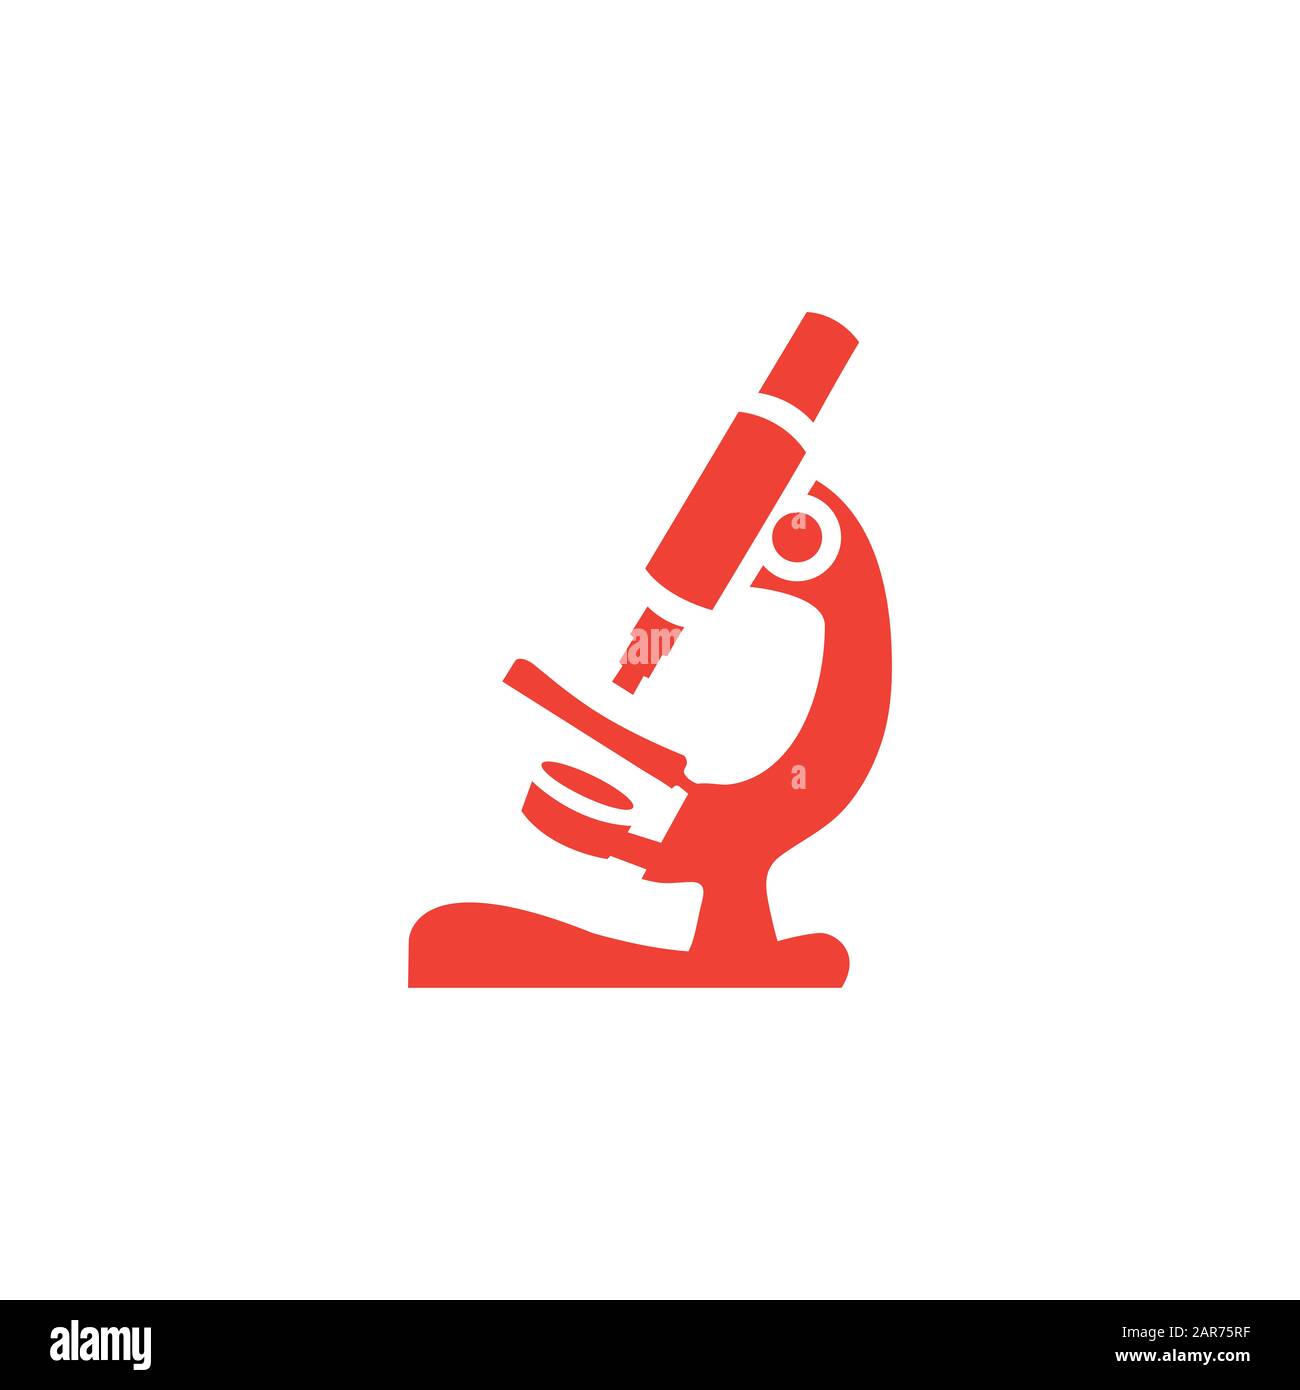 Mikroskop - Rotes Symbol Auf Weißem Hintergrund. Rote Vektor-Grafik Mit  Flacher Form Stockfotografie - Alamy